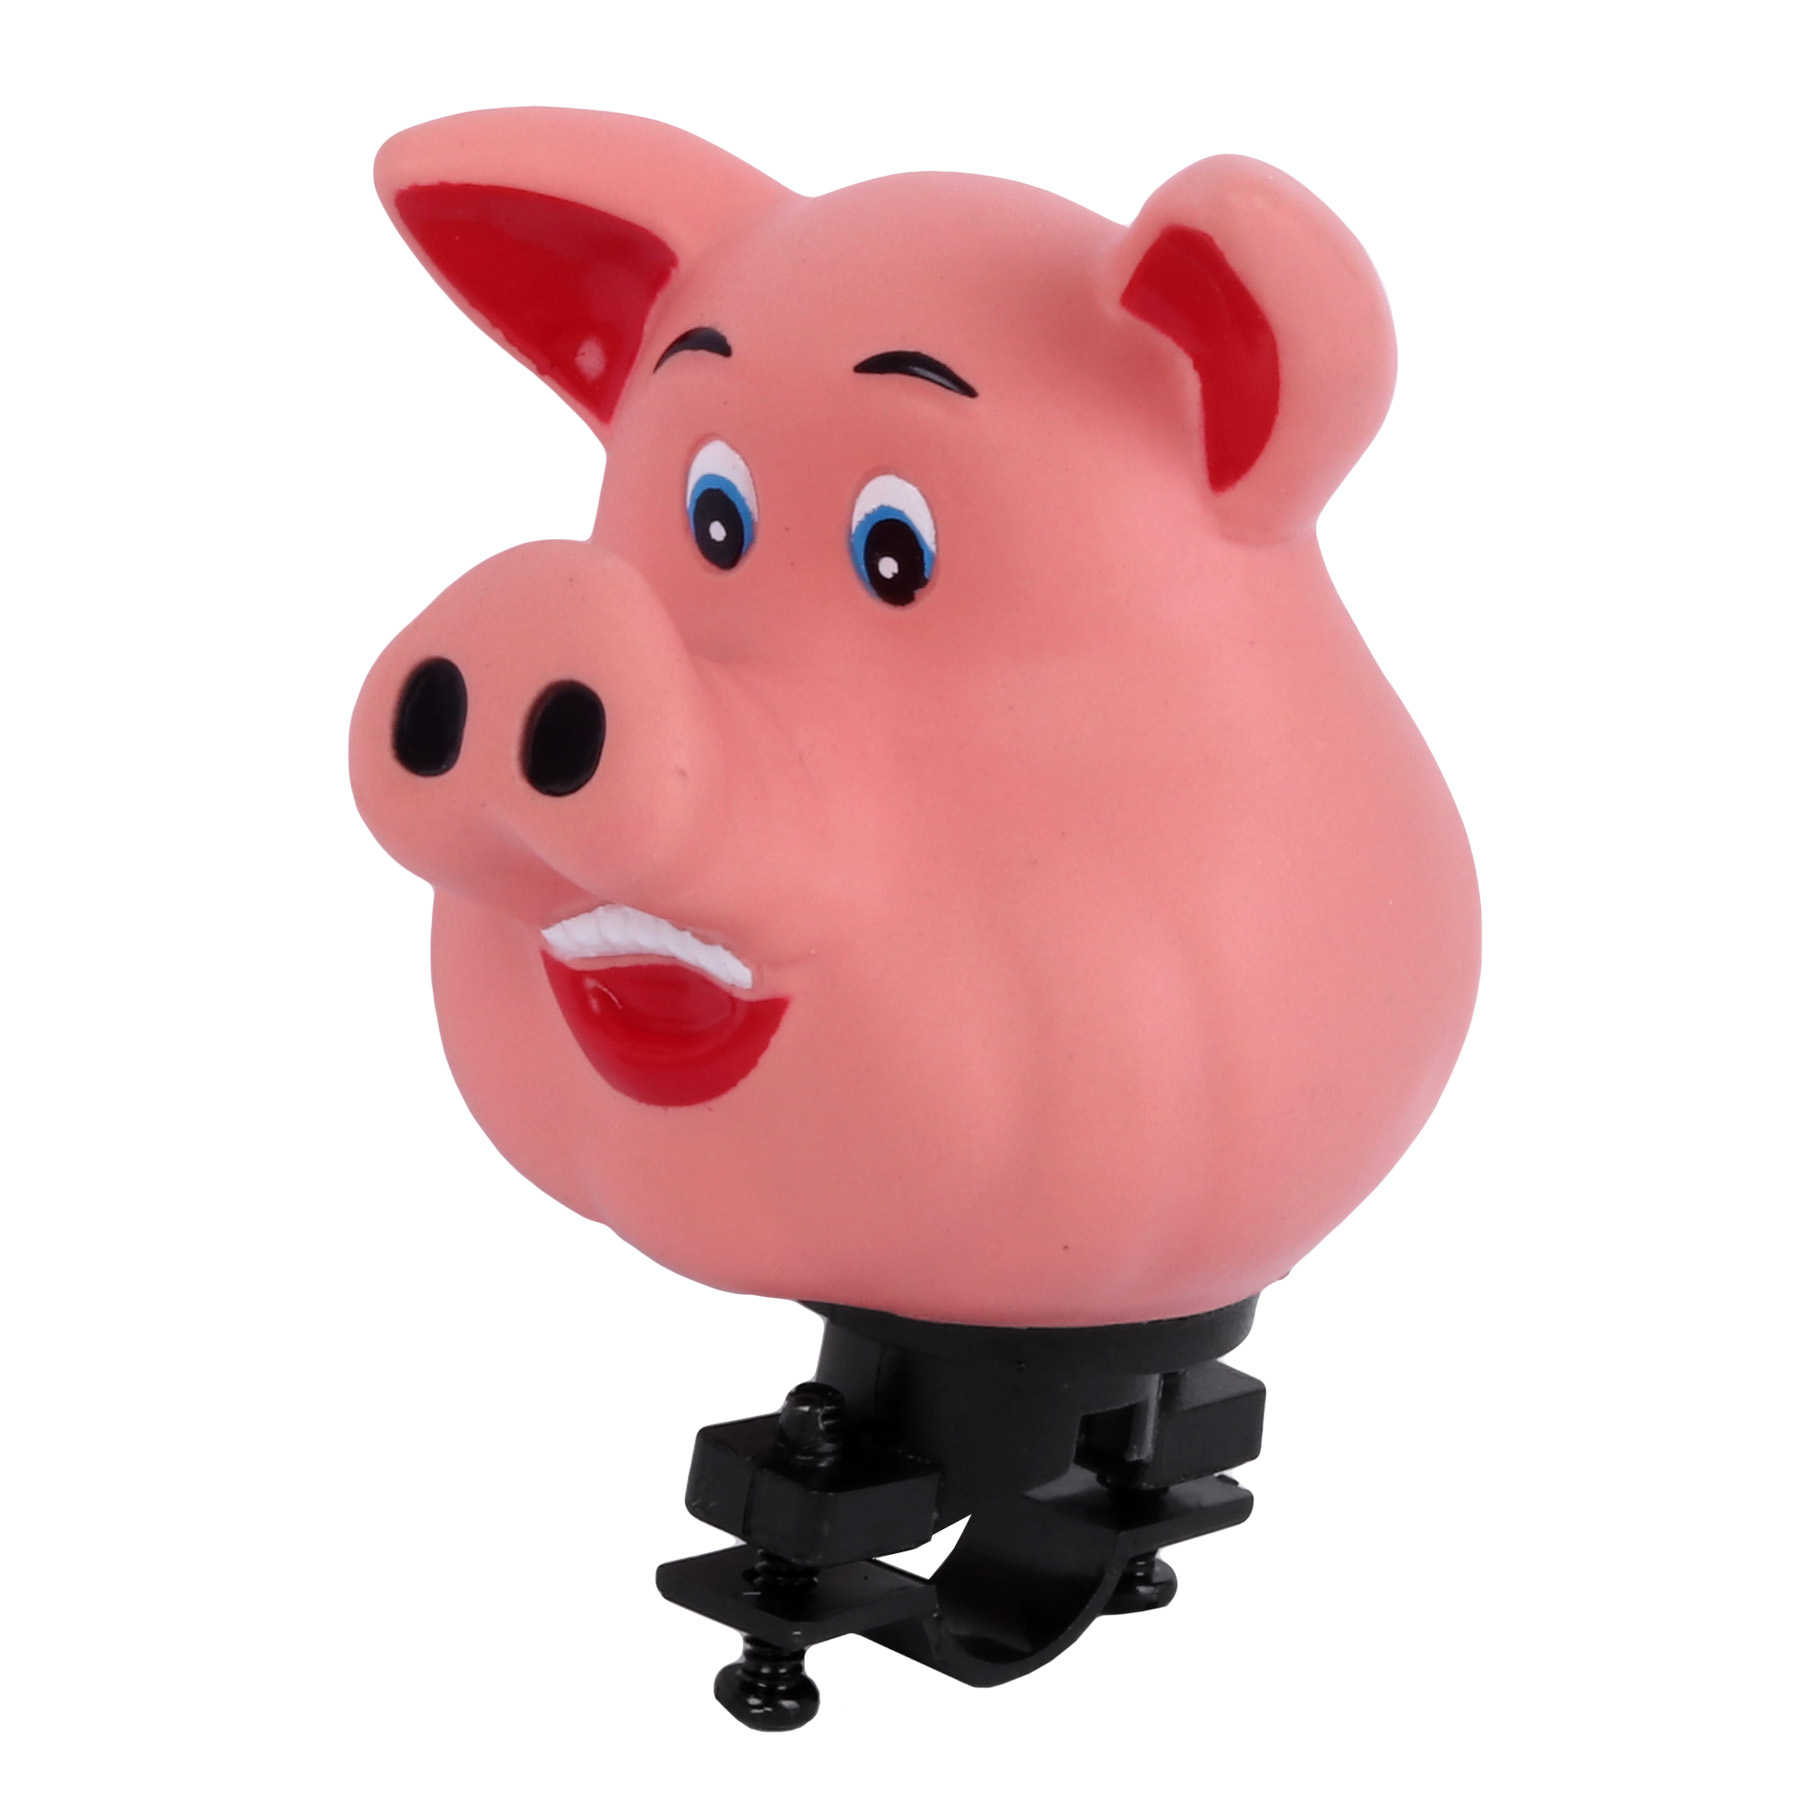 Produktbild von Funny Horn - Figurenhupe Tiere - Schwein